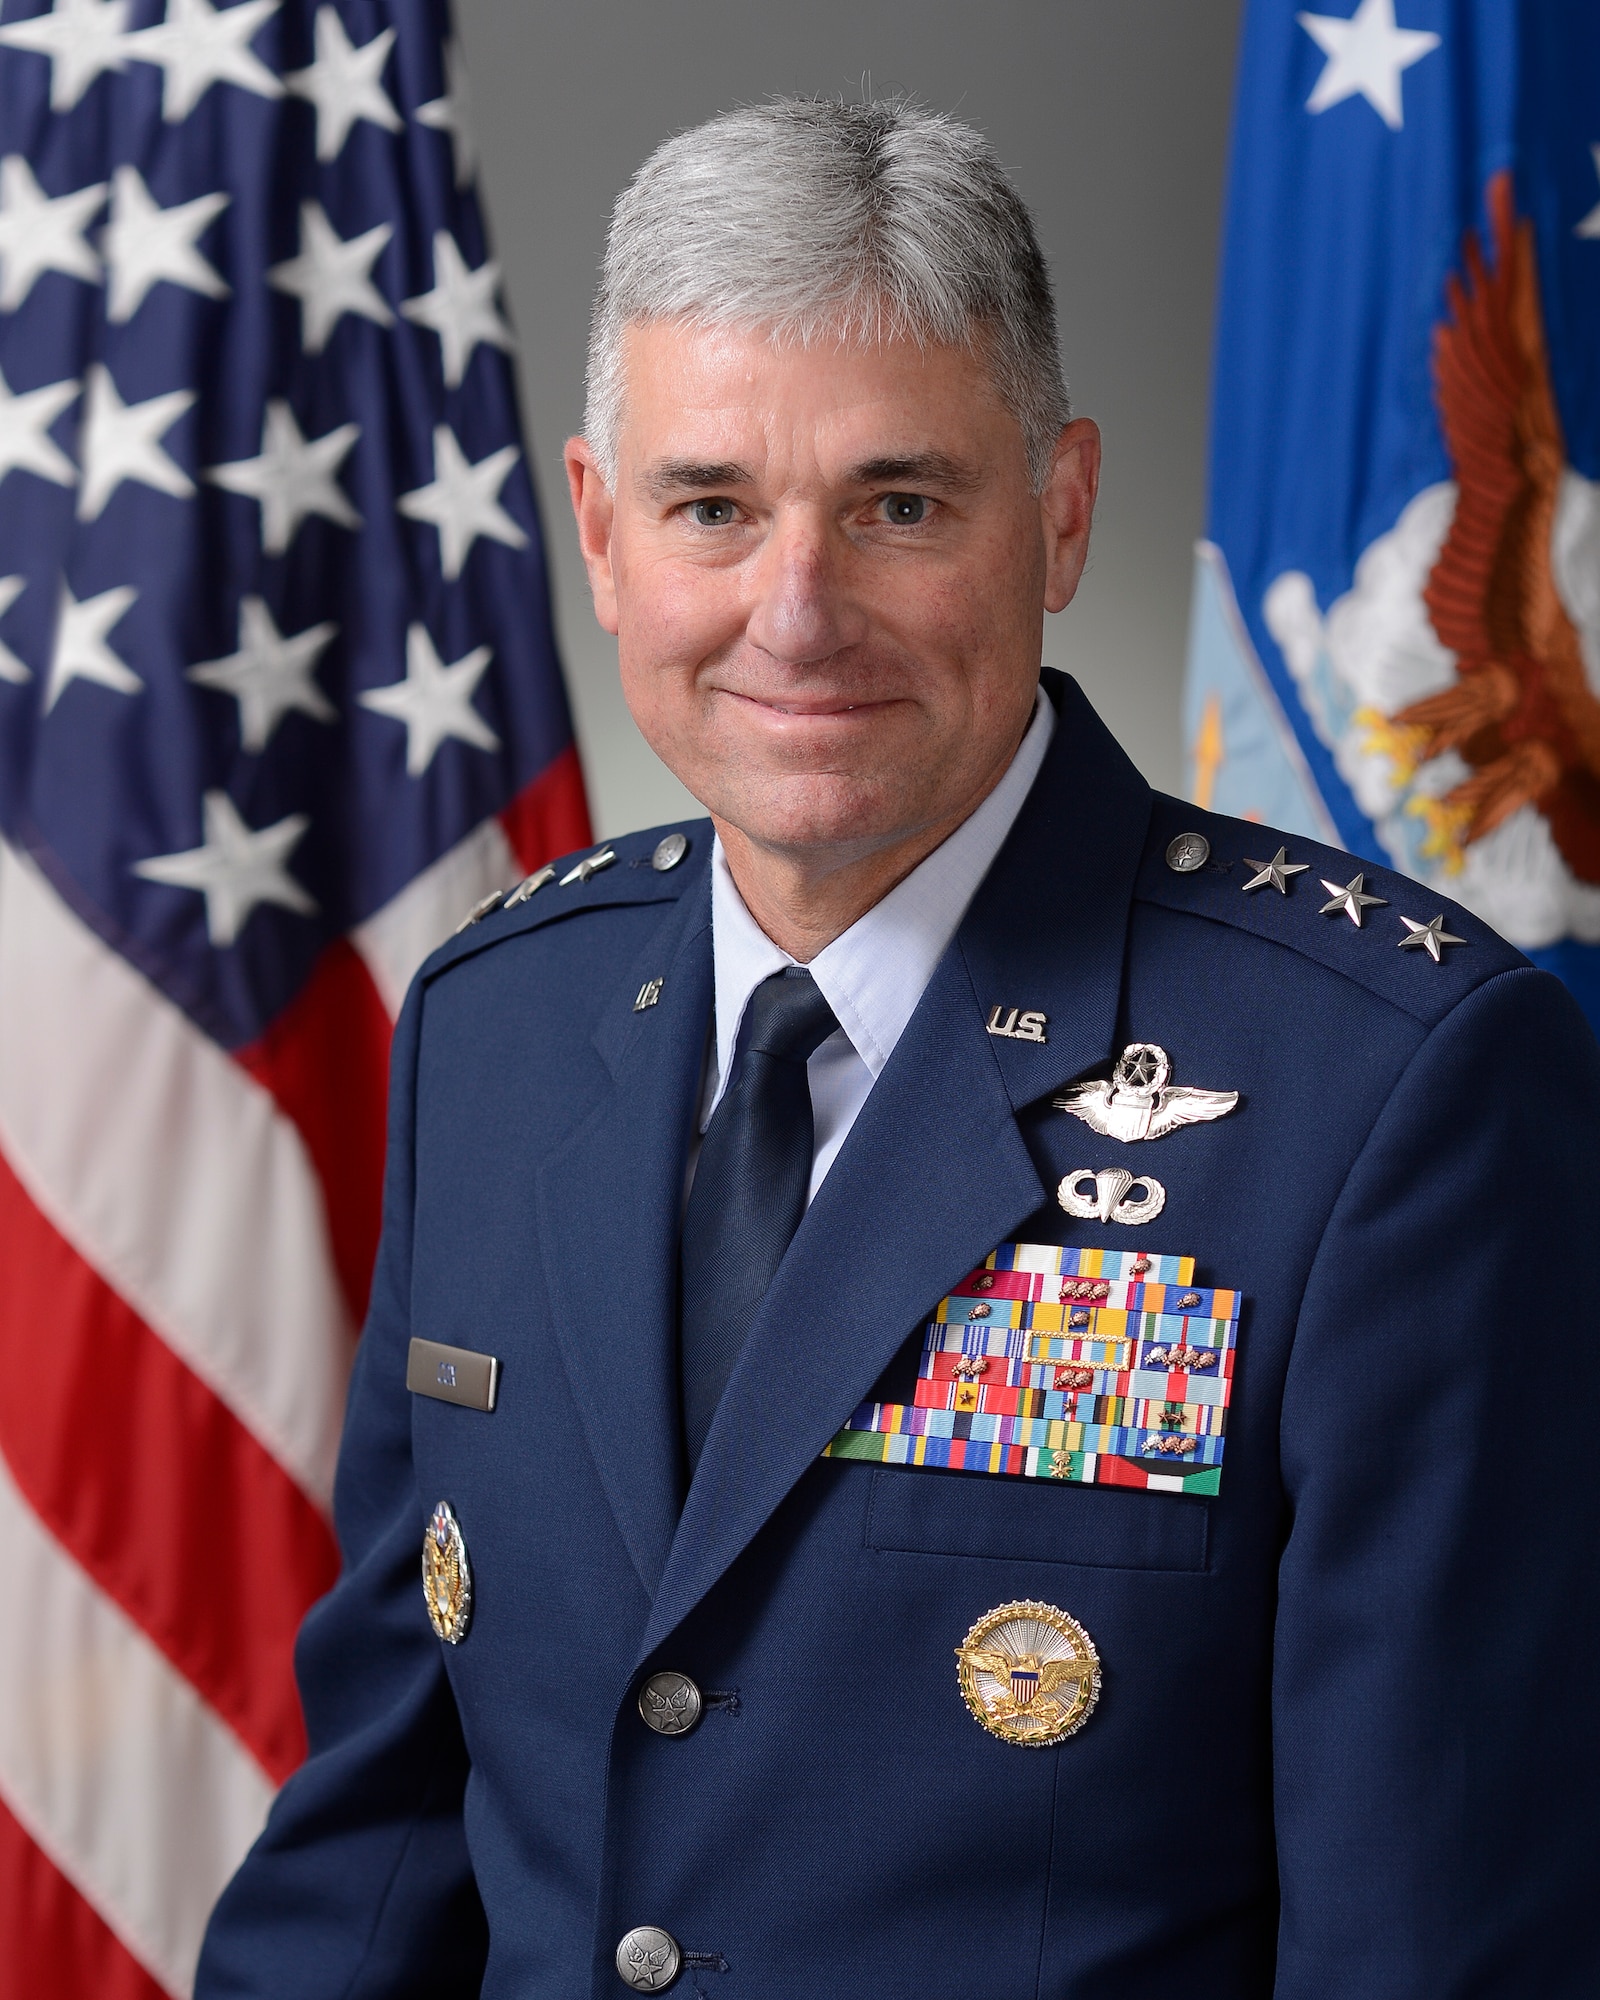 Lt. Gen. Samuel D. Cox
Commander, 18th Air Force